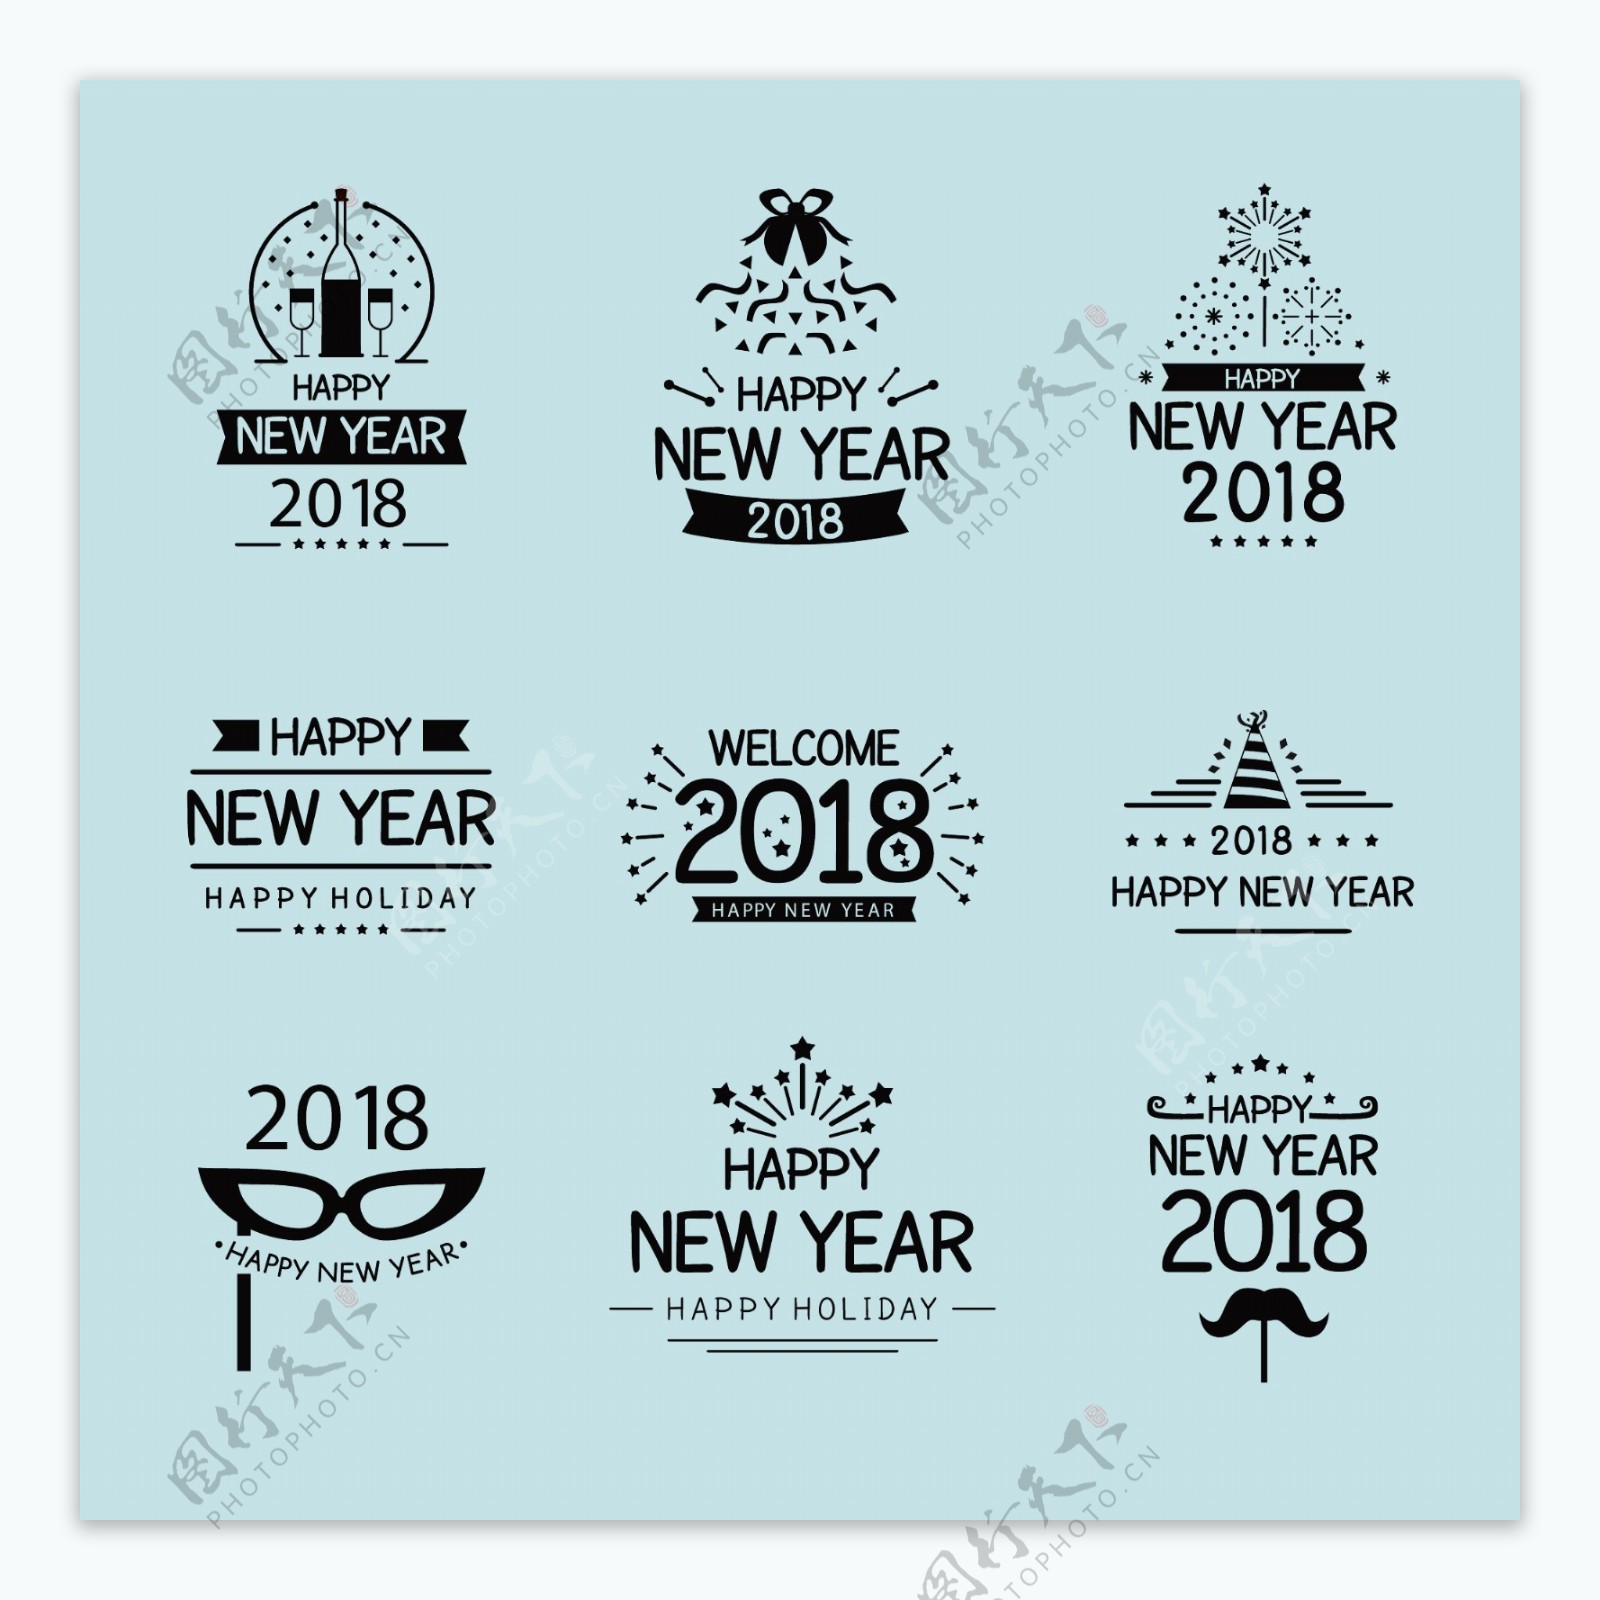 多种2018新年快乐字体标签设计